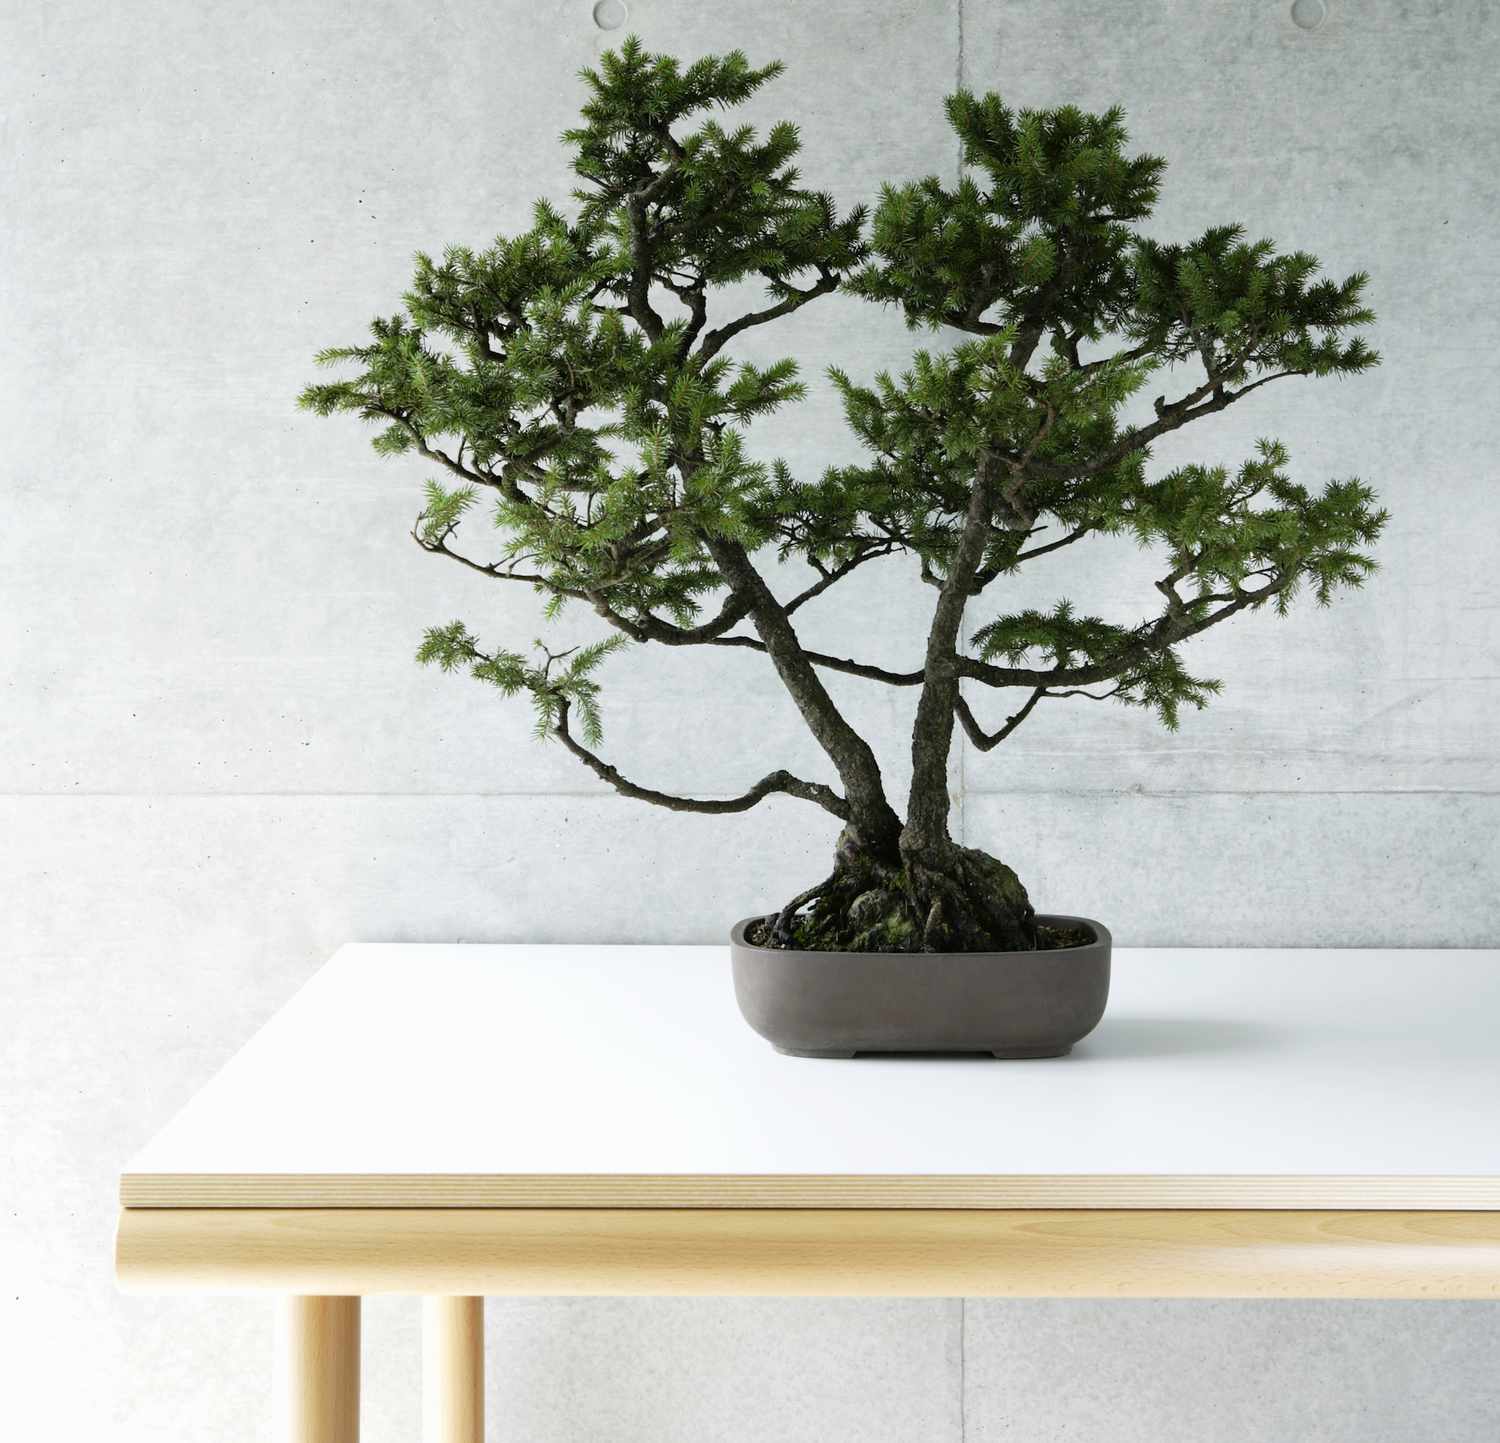 Árbol bonsái en una maceta sentado sobre una mesa blanca.